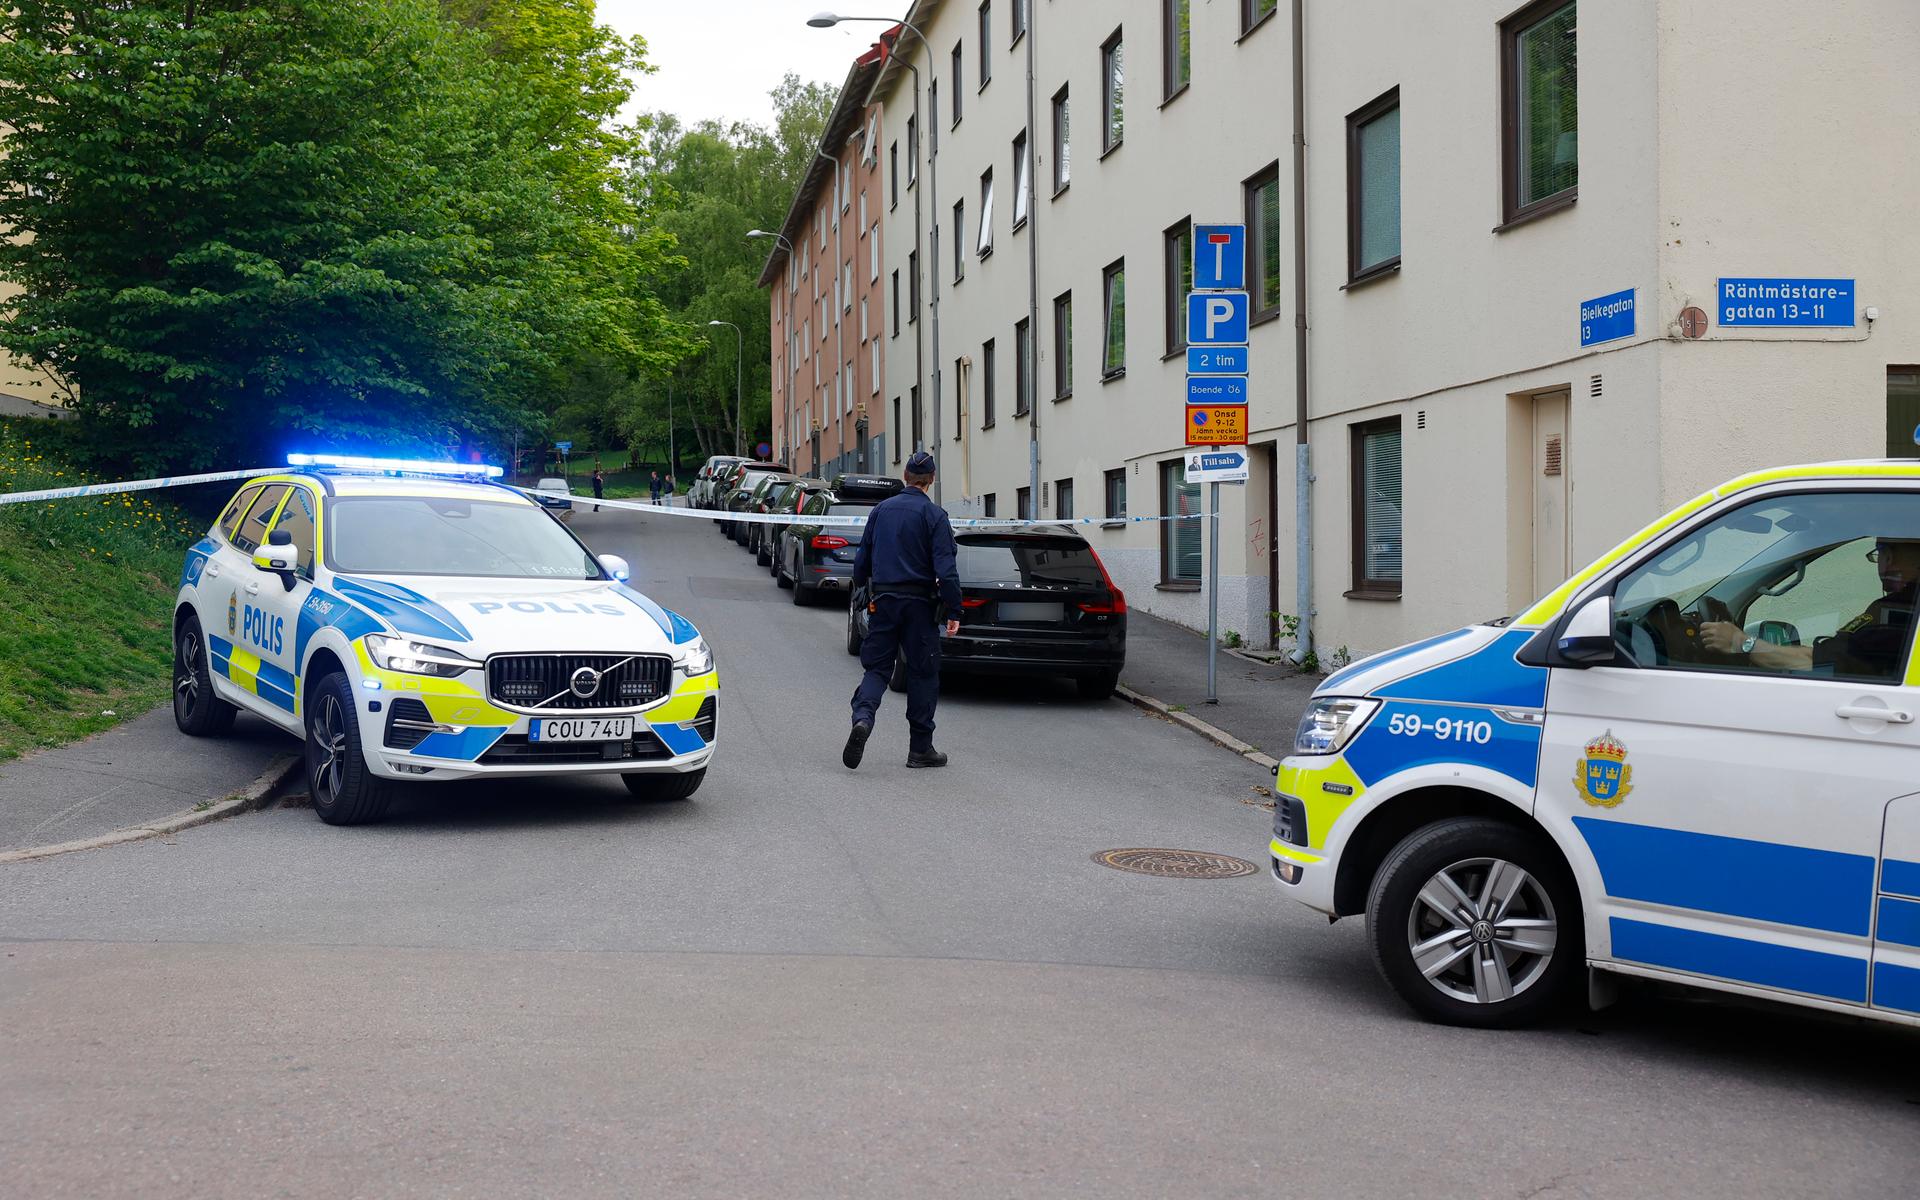 En större polisinsats pågår i området kring Räntmästaregatan.